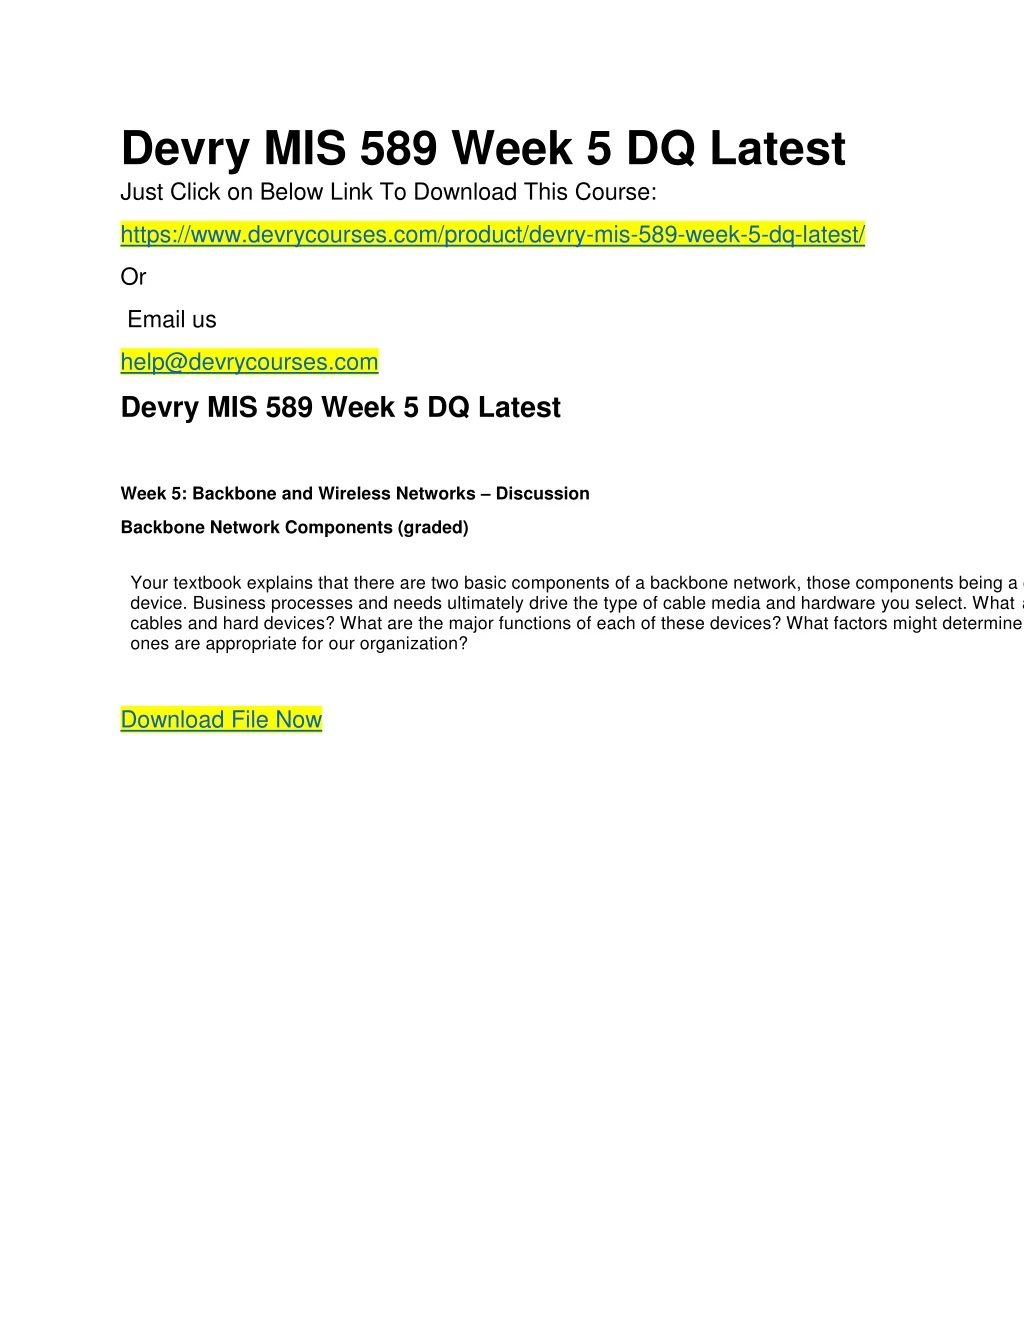 devry mis 589 week 5 dq latest just click